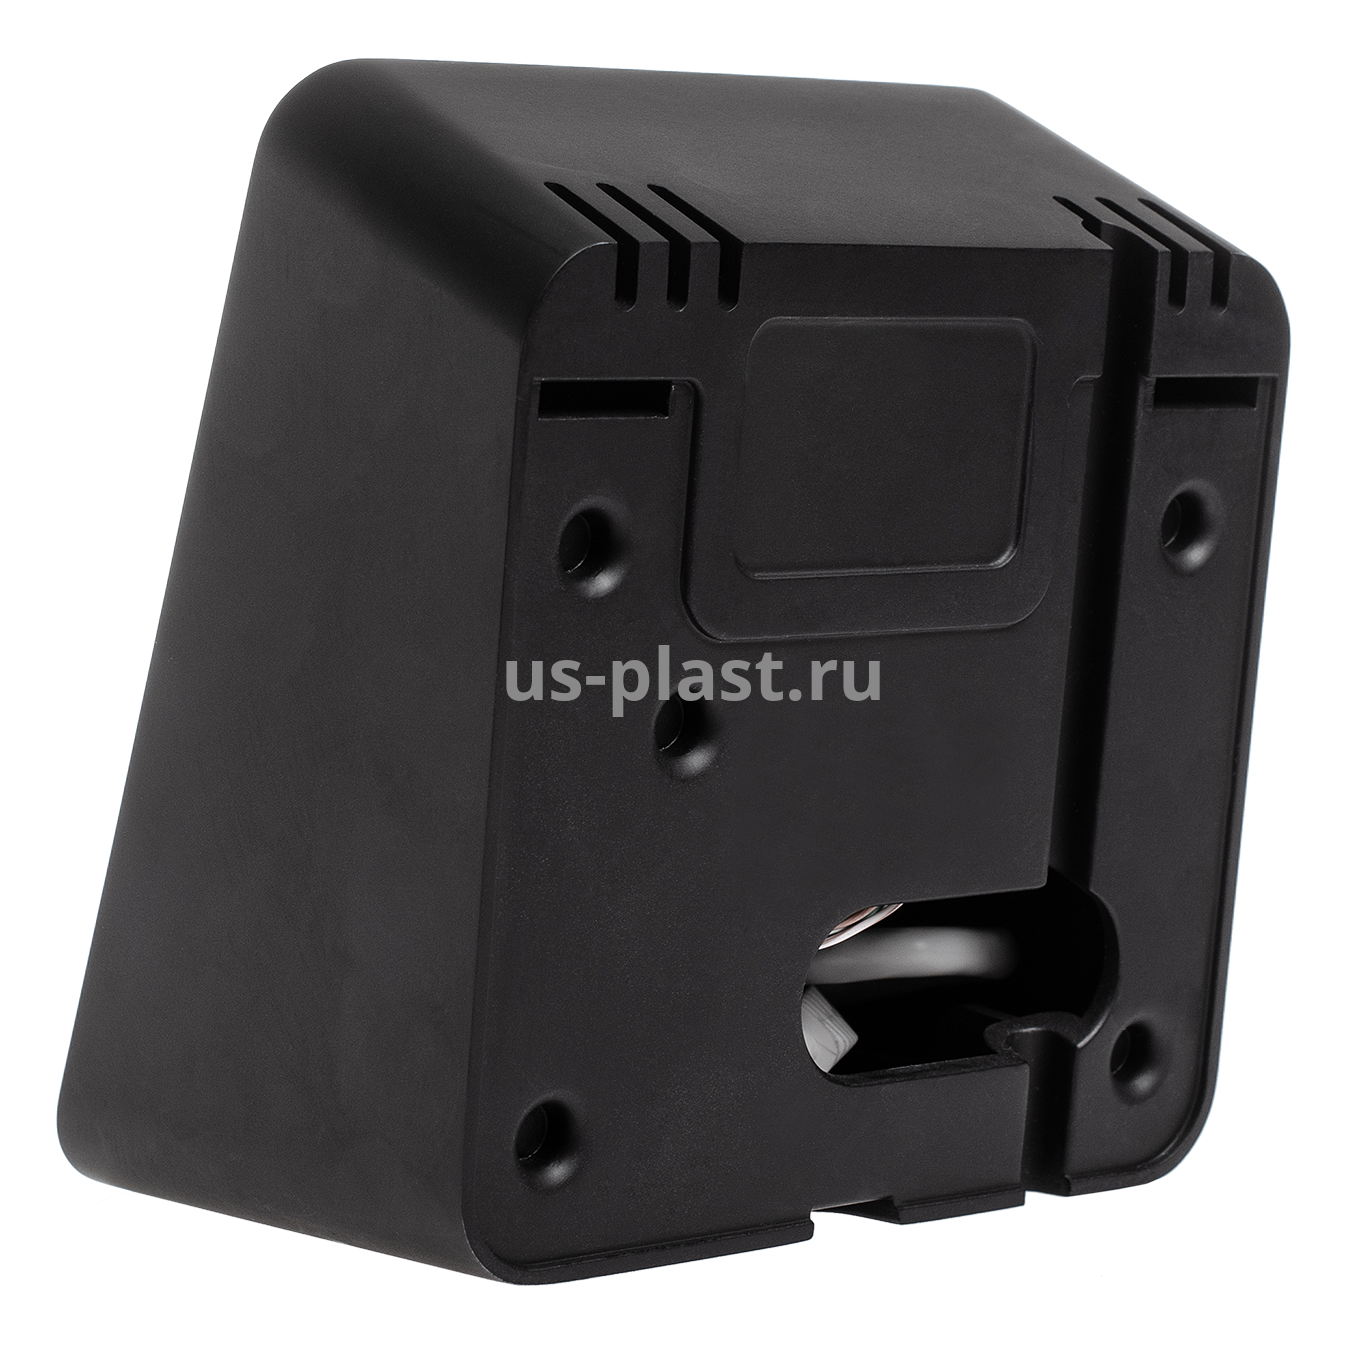 BioSmart PALMJET BOX, биометрический считыватель вен ладони и RFID-карт. Фото N5